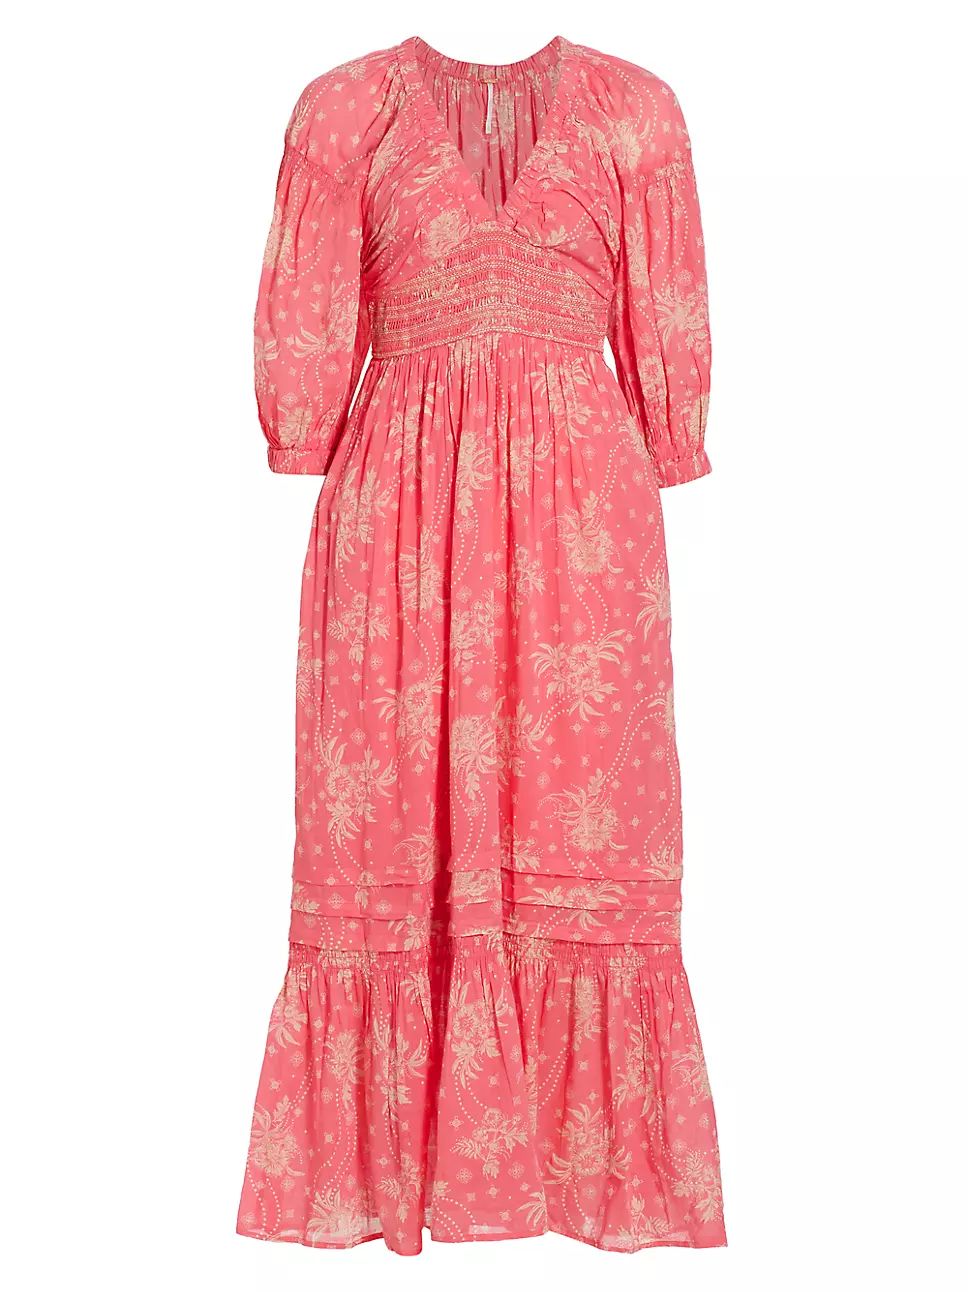 Golden Hour Floral Cotton Maxi Dress | Saks Fifth Avenue